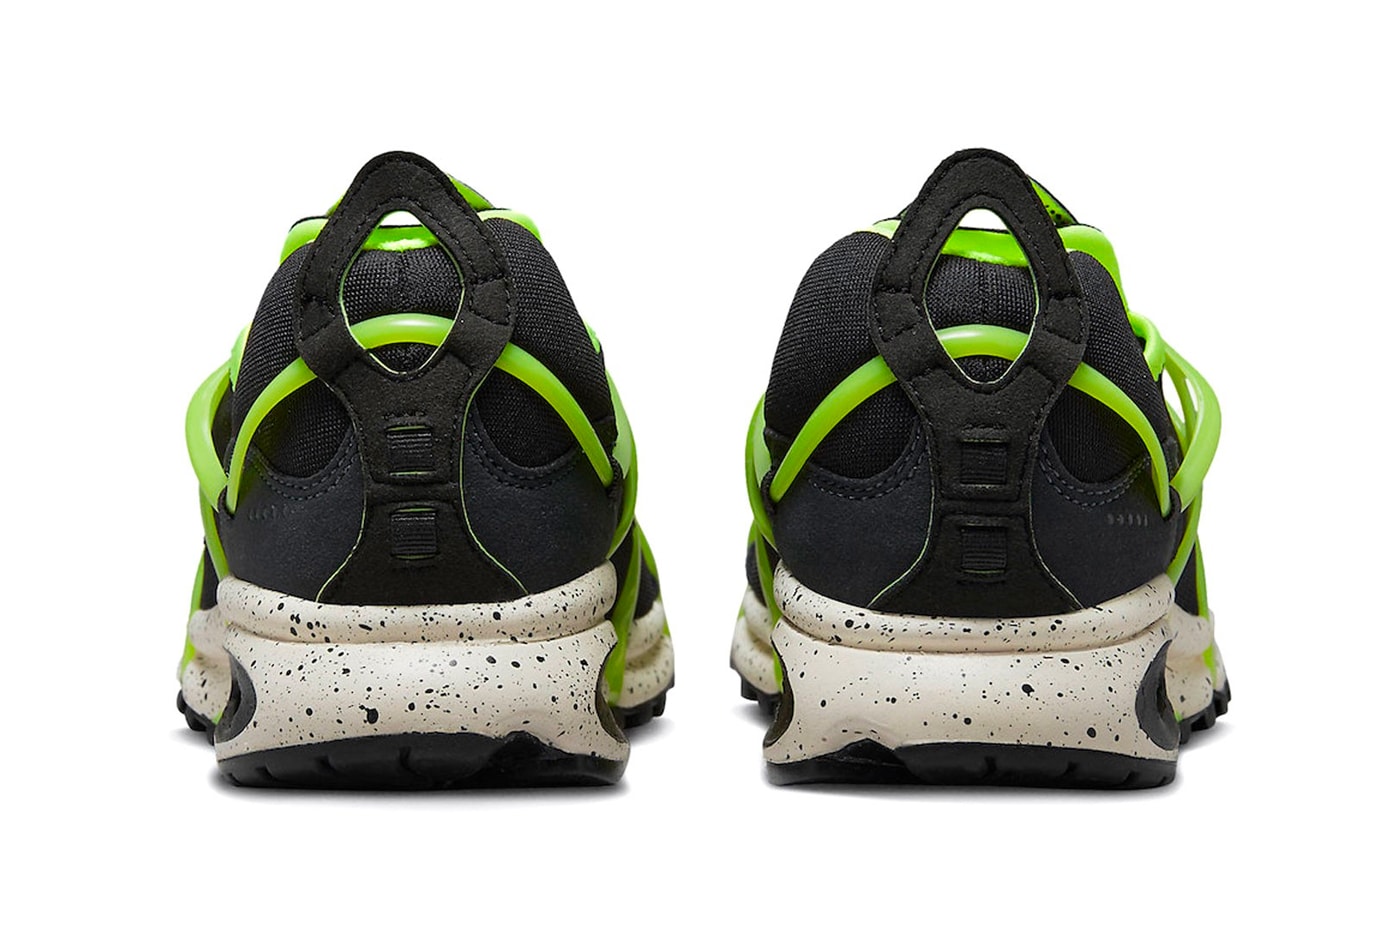 ナイキエアクキニからスライムをこぼしたかのような新色“ブラックネオン”が登場 Nike Air Kukini Neon Green Sneaker Footwear dz4851-001 Green Laceless Slip-On Trainers Speckles Air Cushioning 